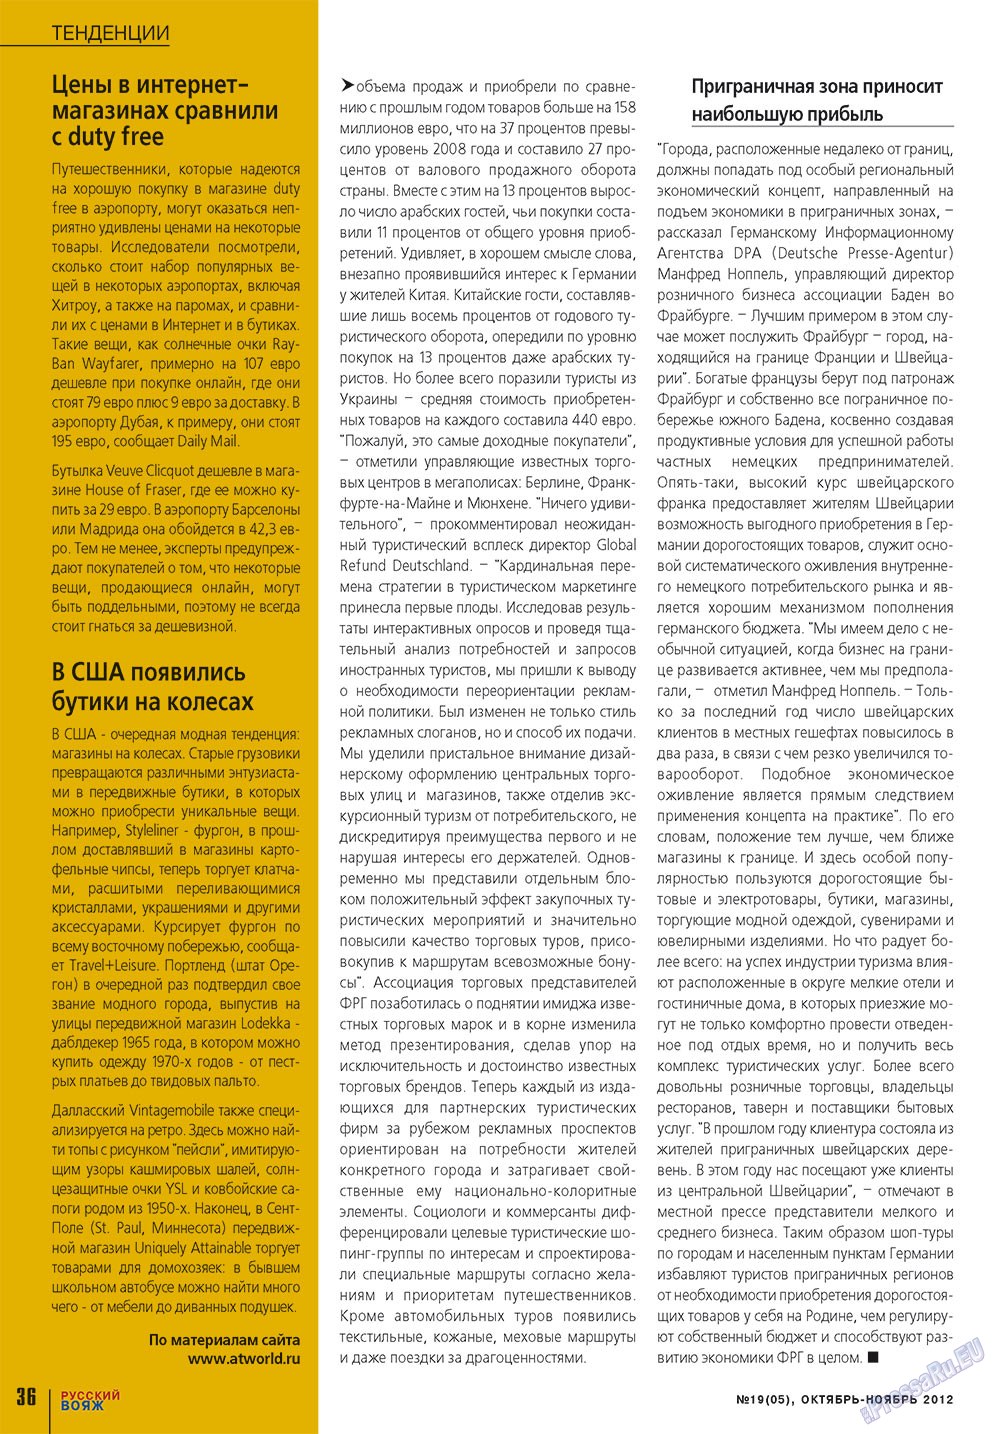 Русский вояж (журнал). 2012 год, номер 19, стр. 36